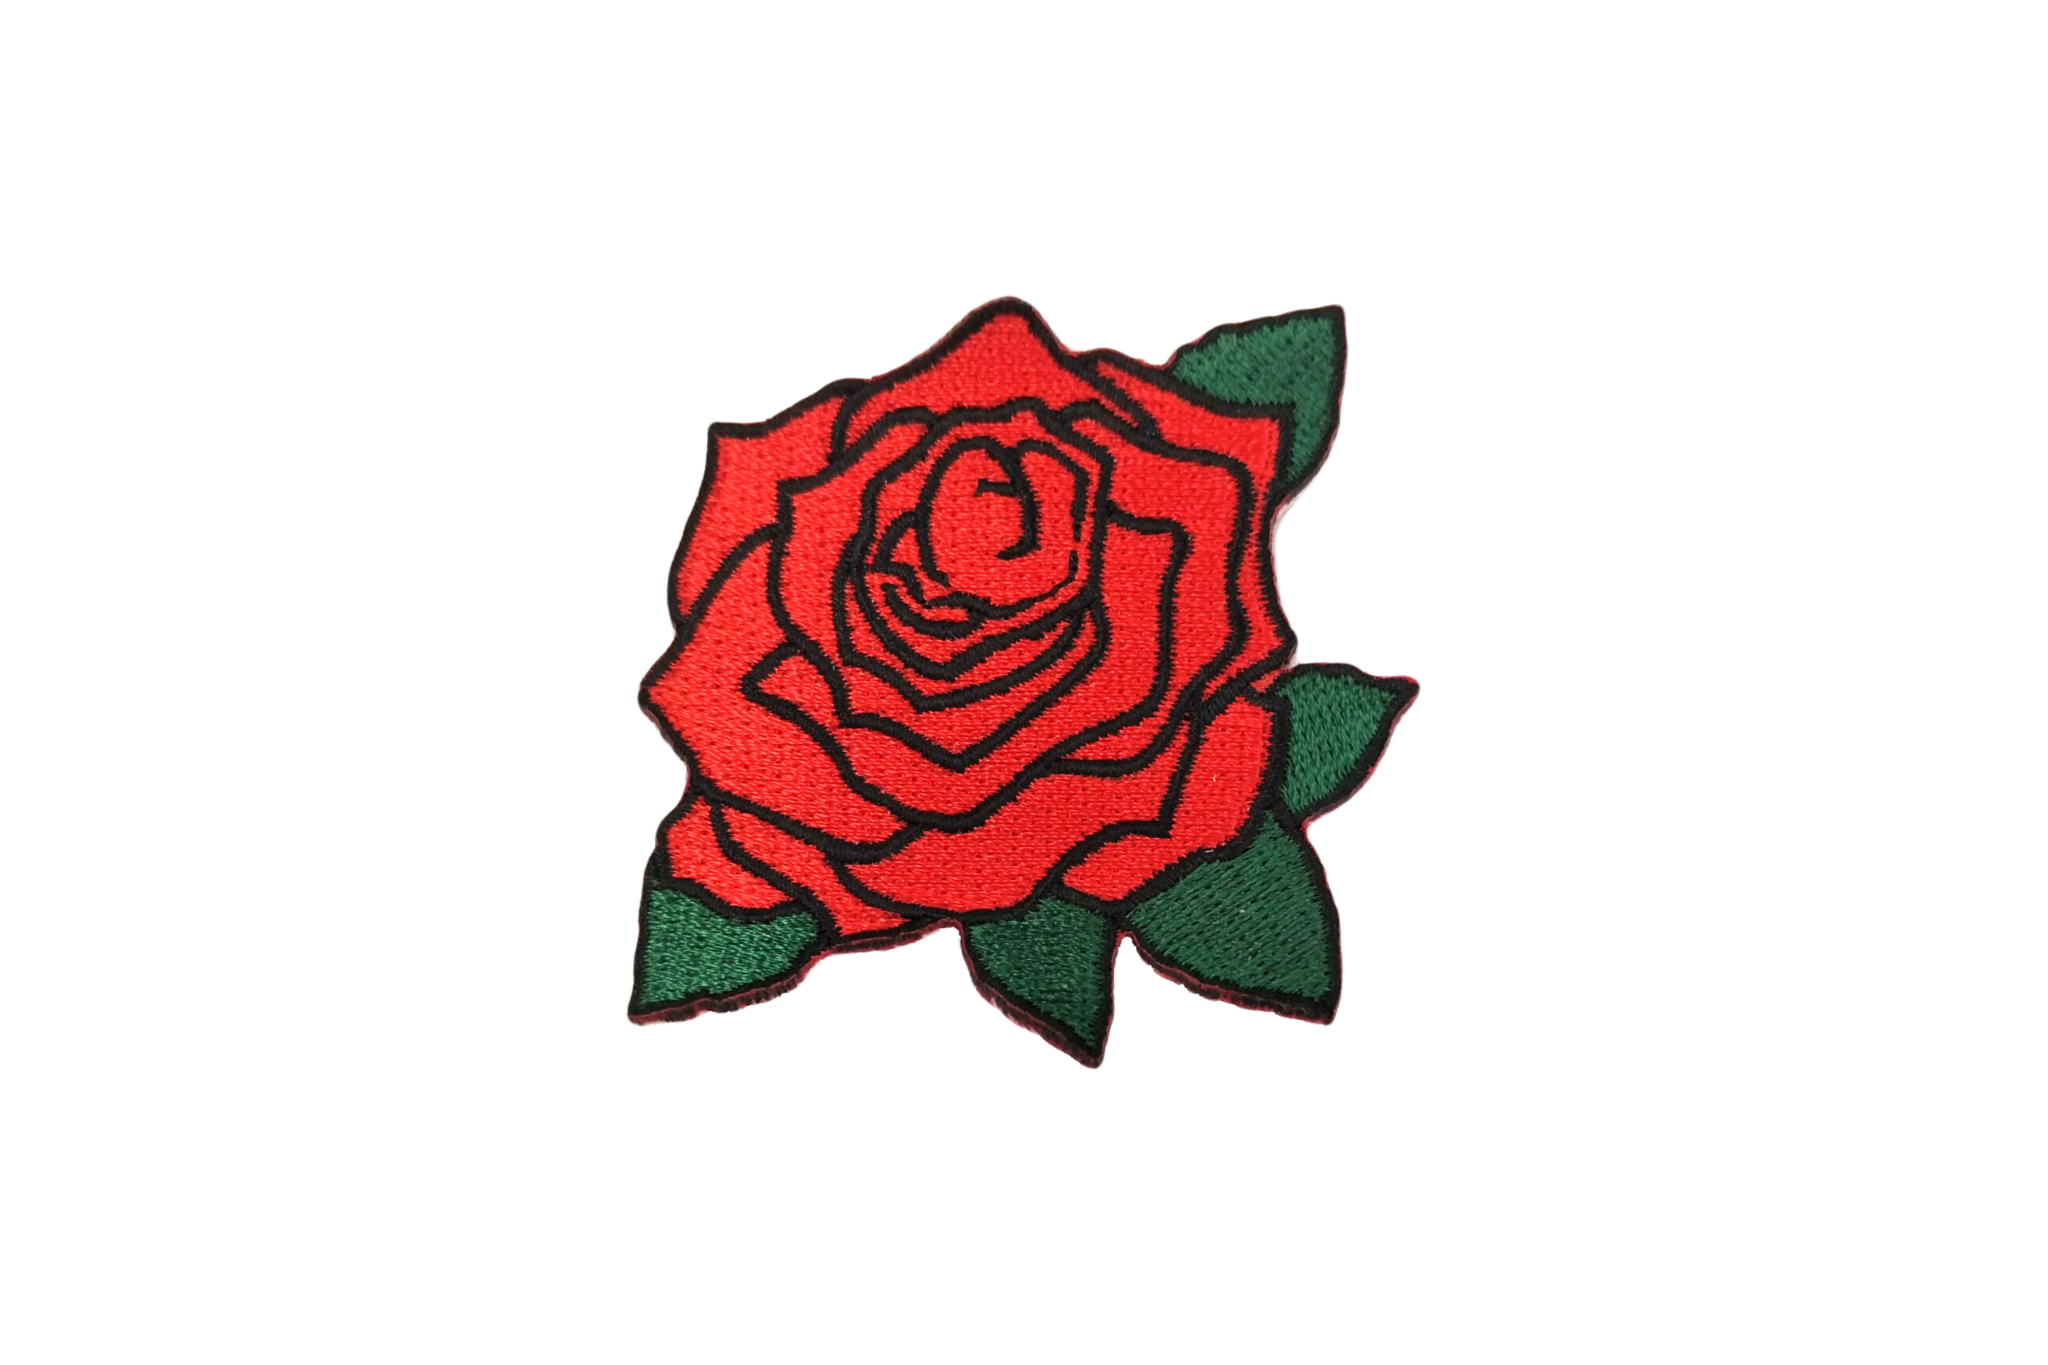  red  rose sticker  png  tumblr freetoedit 